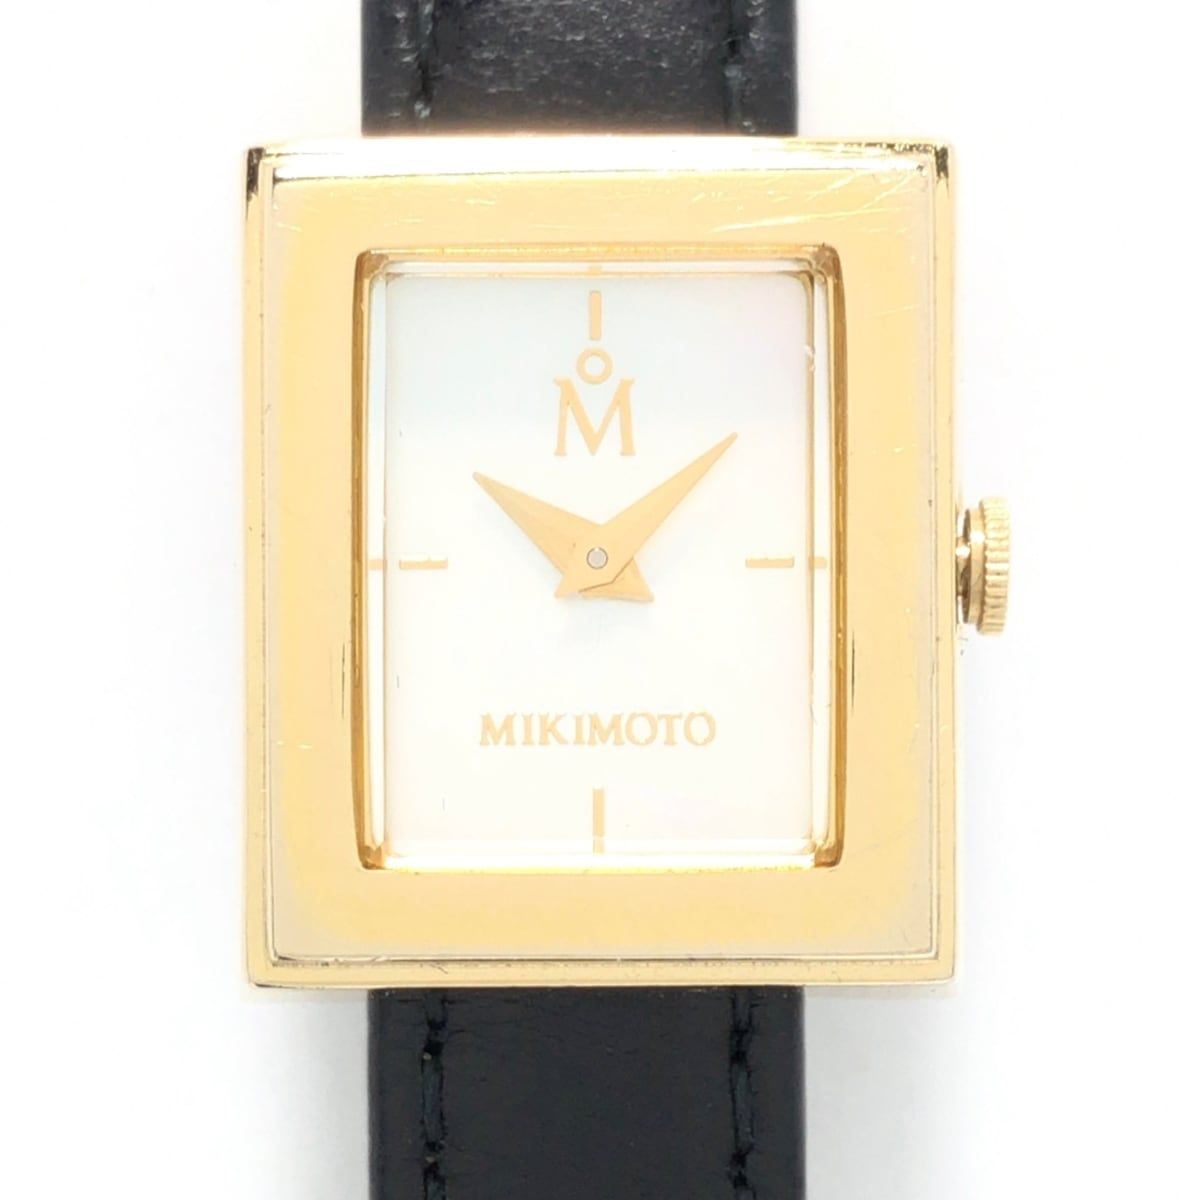 mikimoto(ミキモト) 腕時計 - レディース パール ホワイトシェル ...